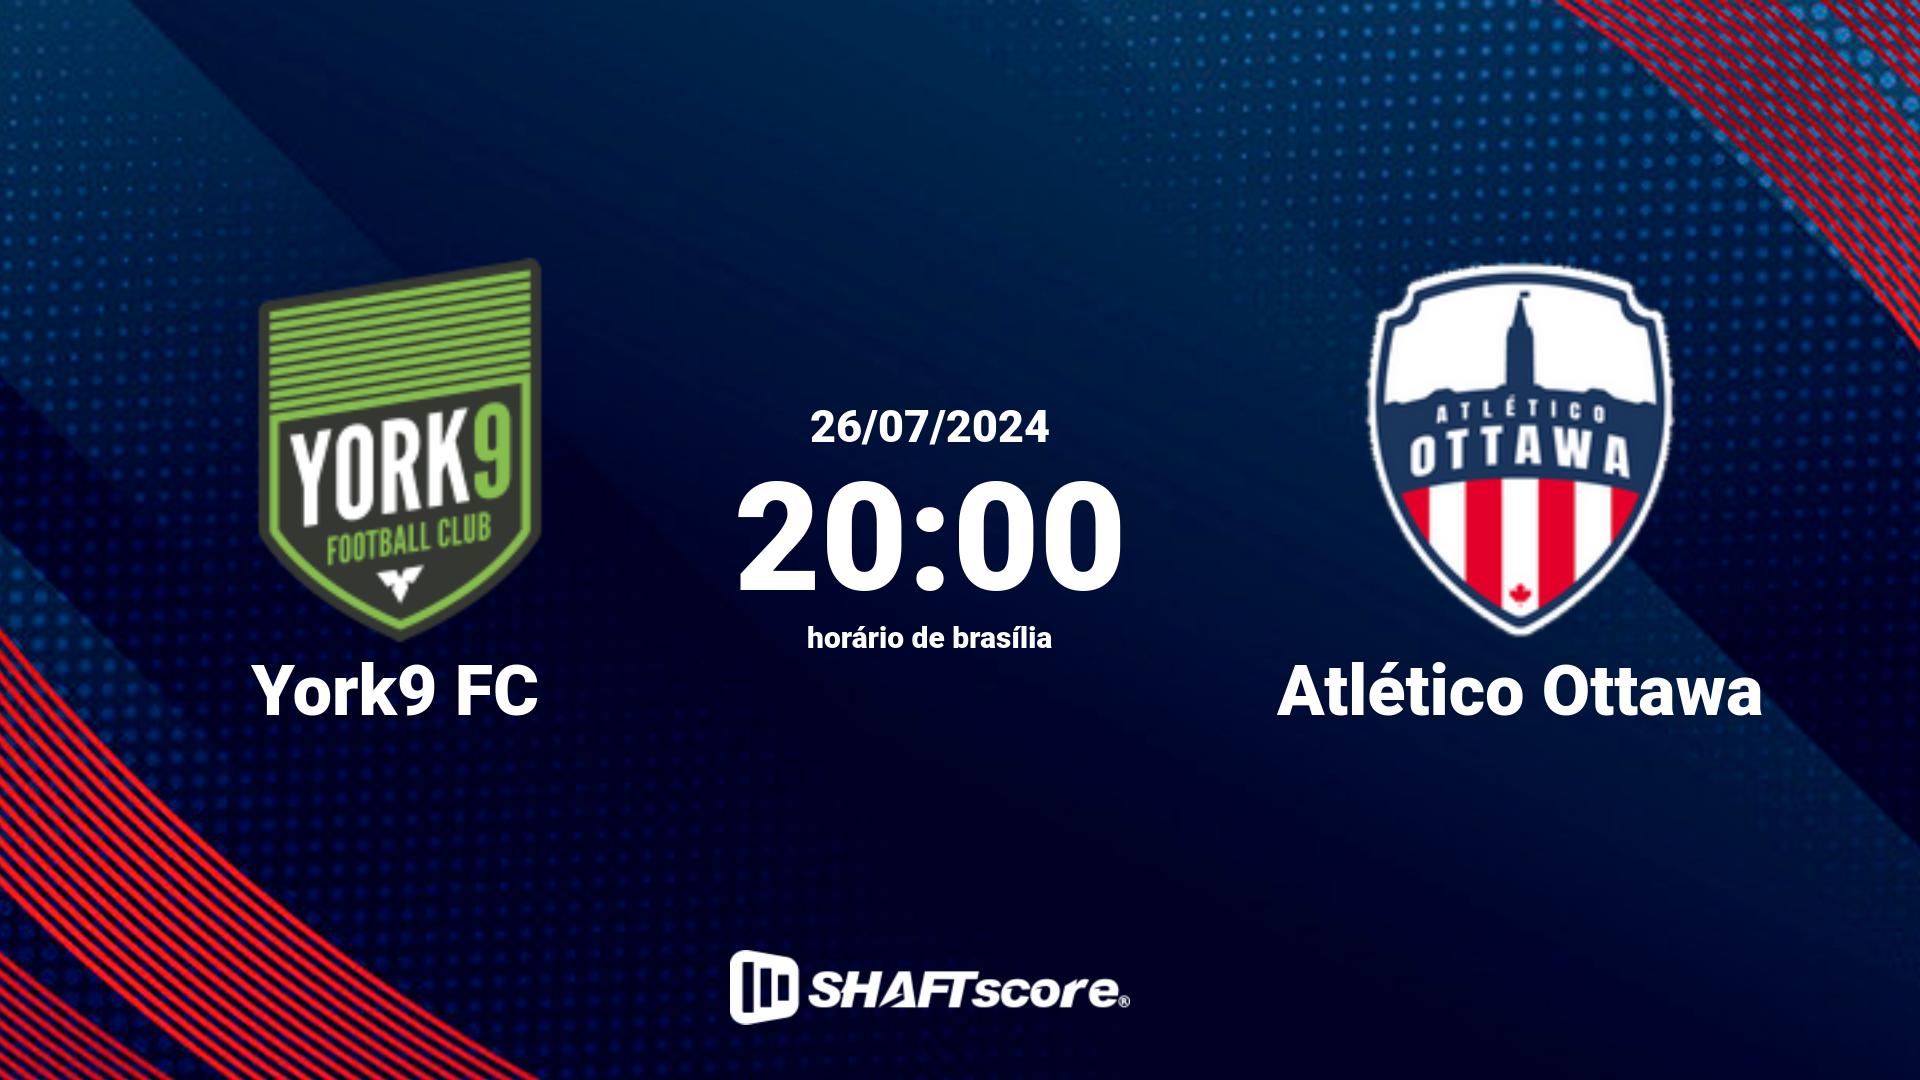 Estatísticas do jogo York9 FC vs Atlético Ottawa 26.07 20:00